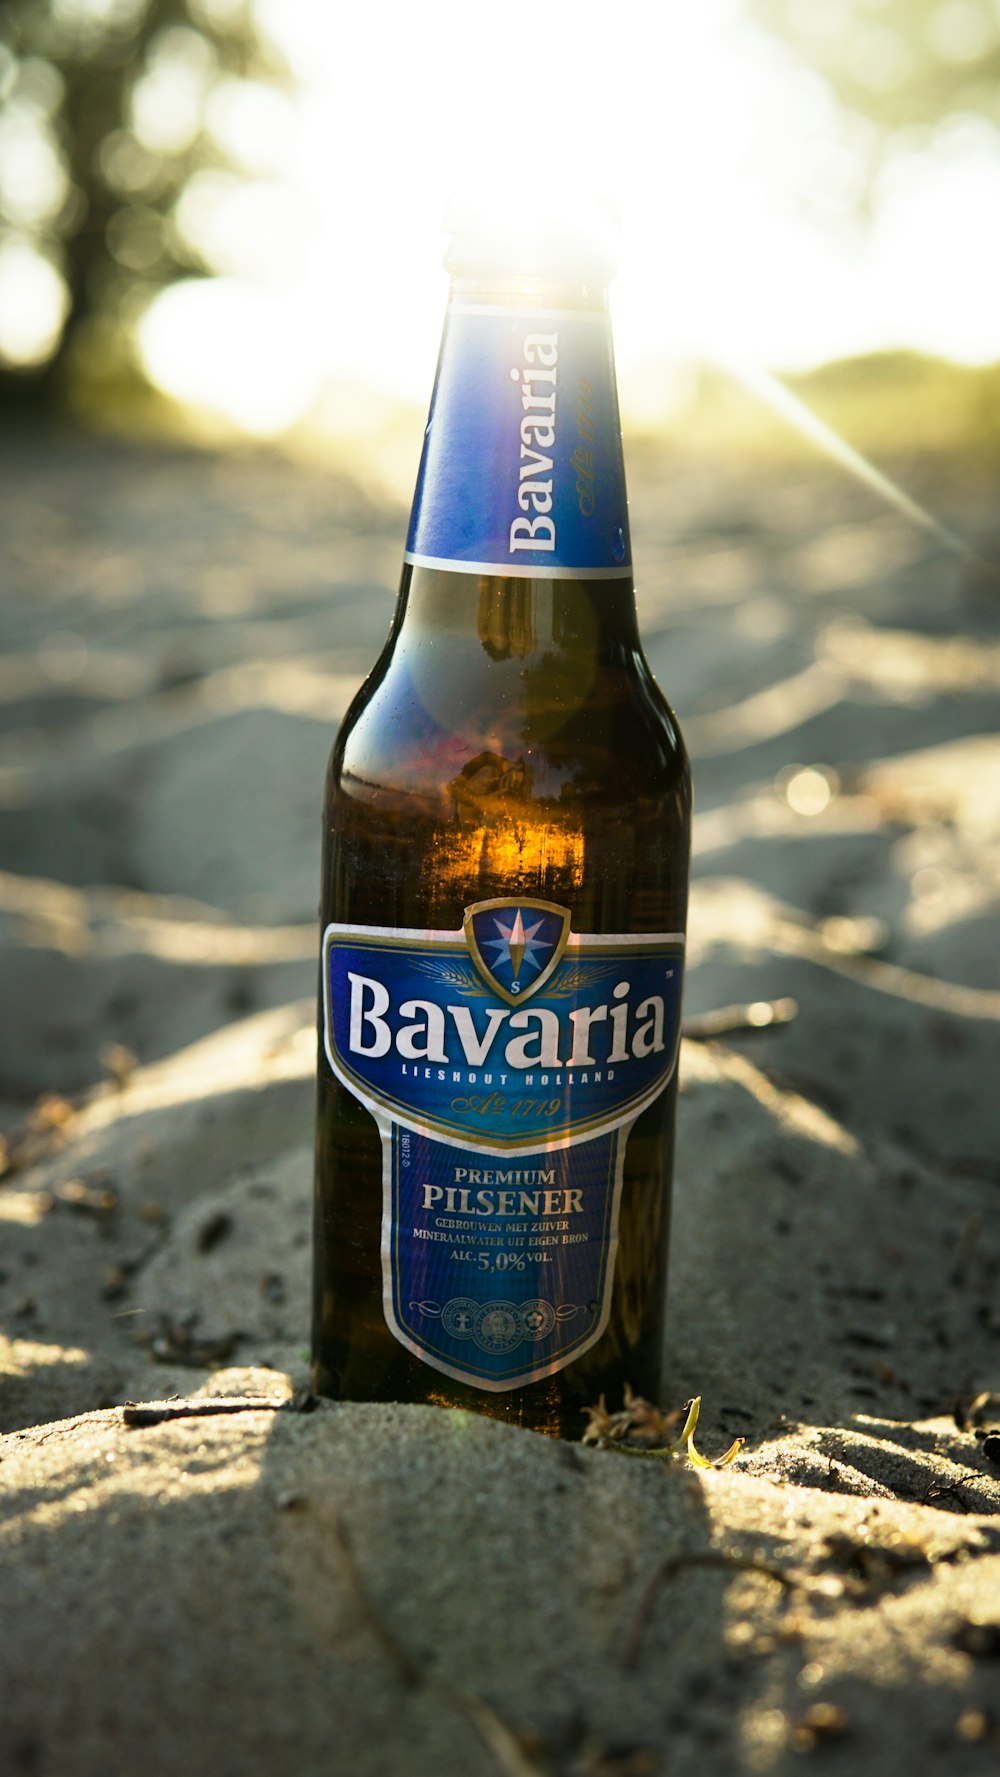 Bavaria Pilsener beer bottle on sand